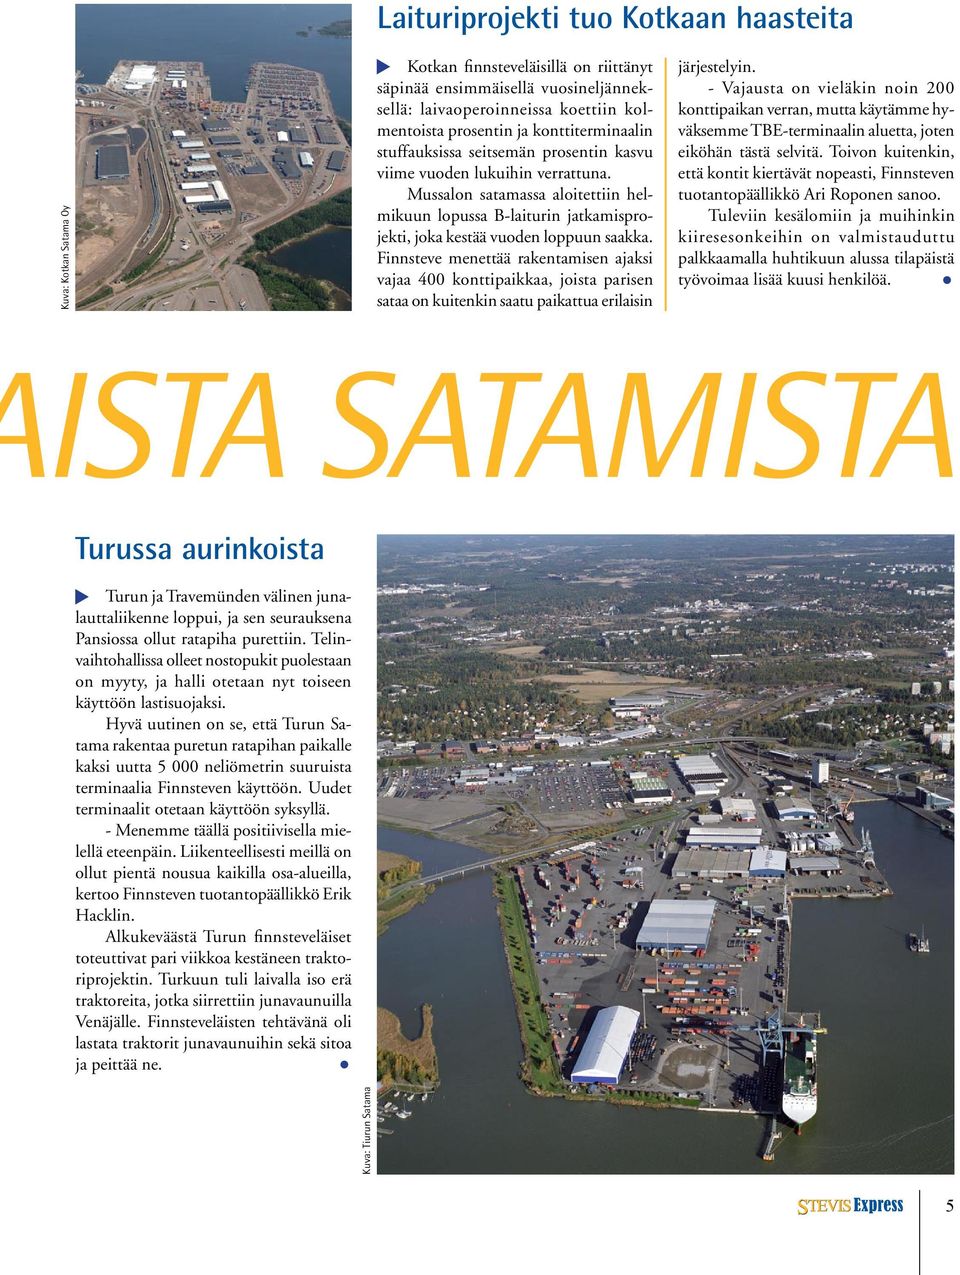 Mussalon satamassa aloitettiin helmikuun lopussa B-laiturin jatkamisprojekti, joka kestää vuoden loppuun saakka.